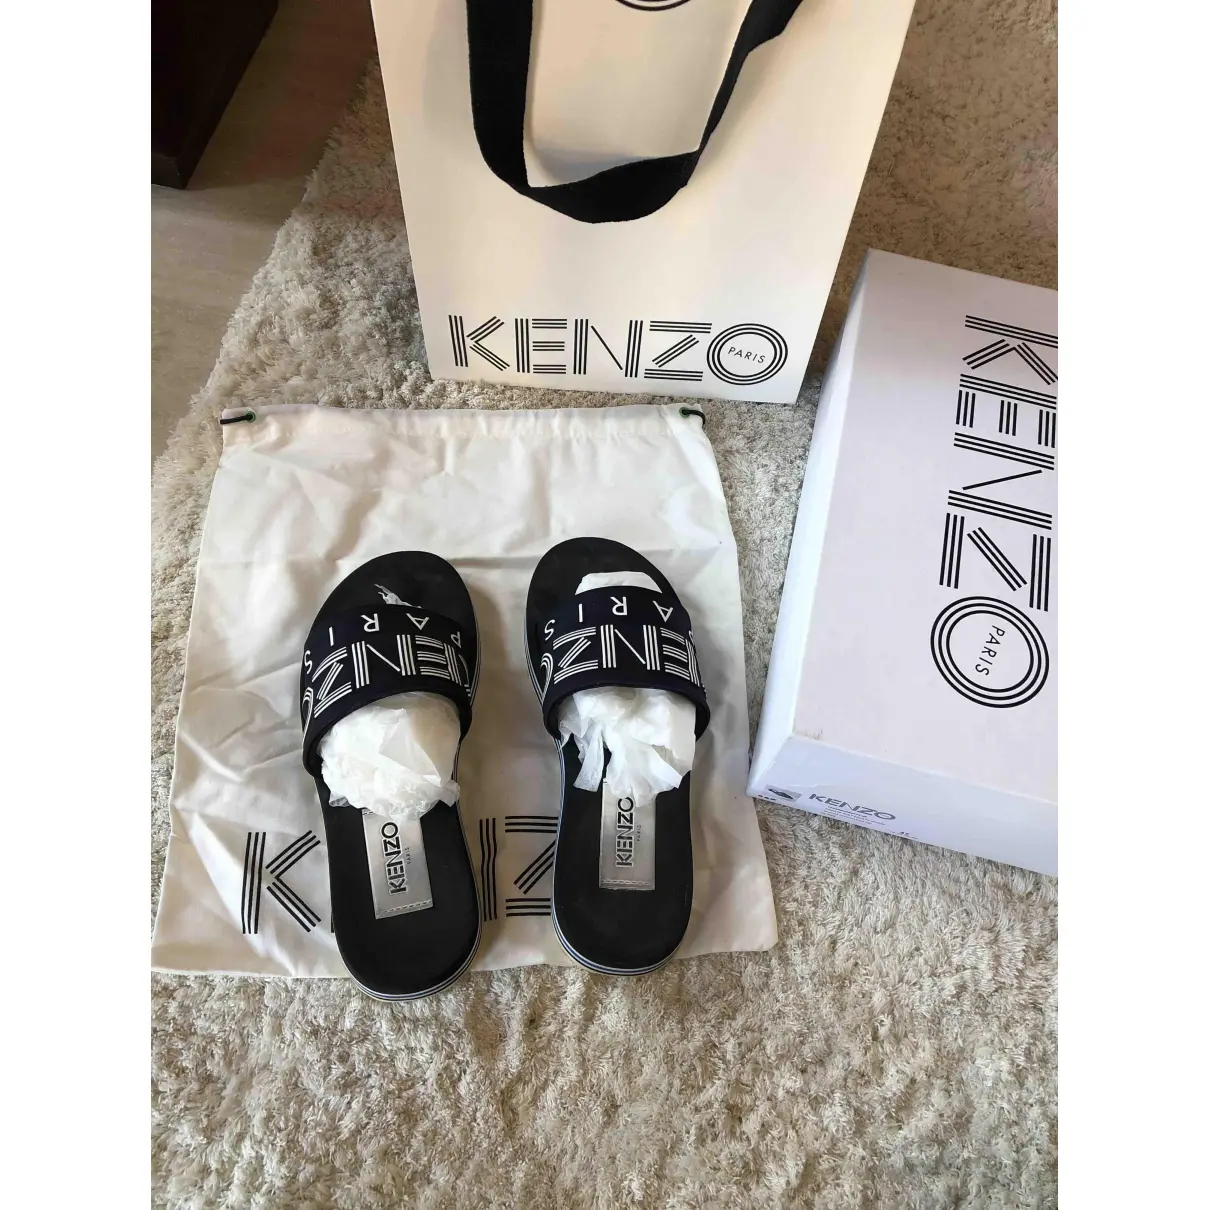 Buy Kenzo Sandals online